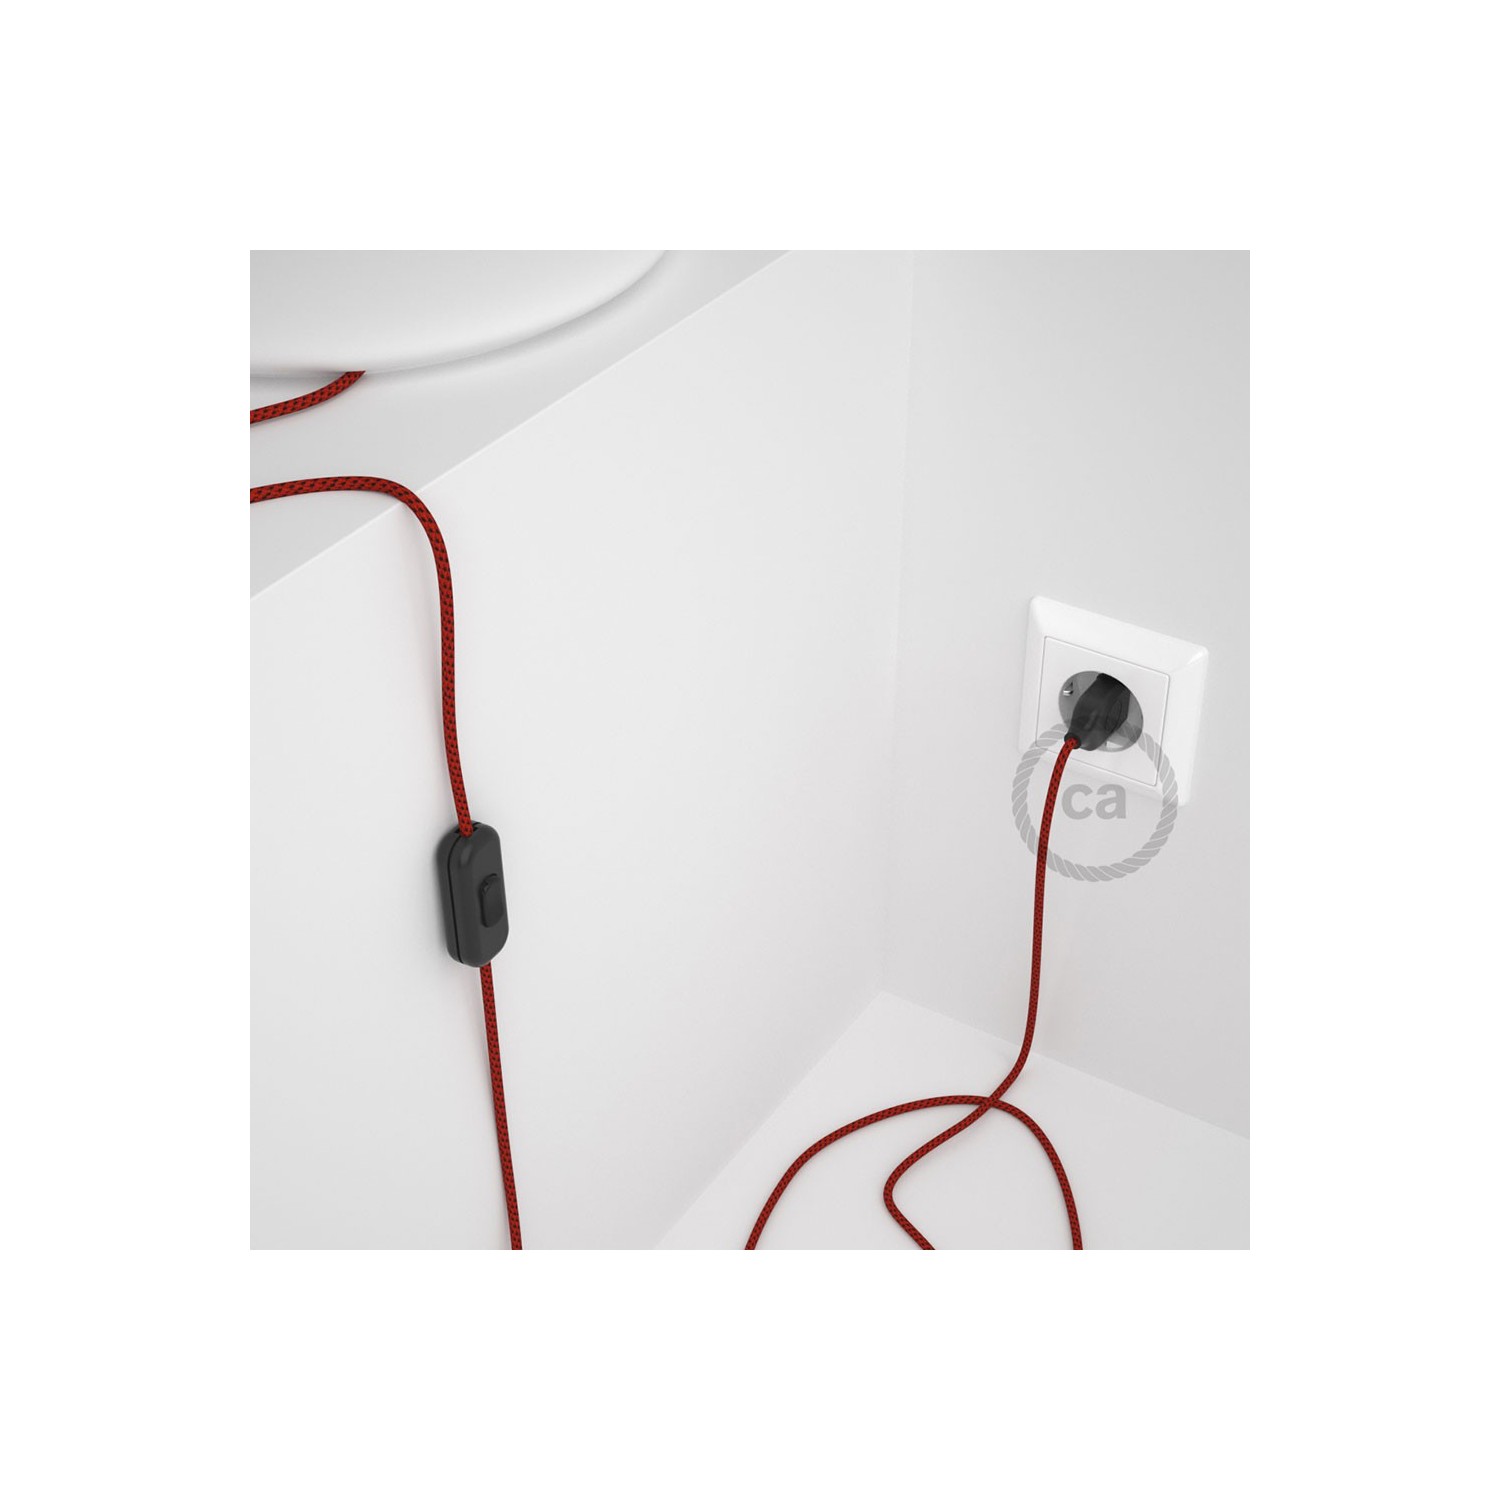 Cordon pour lampe, câble RT94 Effet Soie Red Devil 1,80 m. Choisissez la couleur de la fiche et de l'interrupteur!